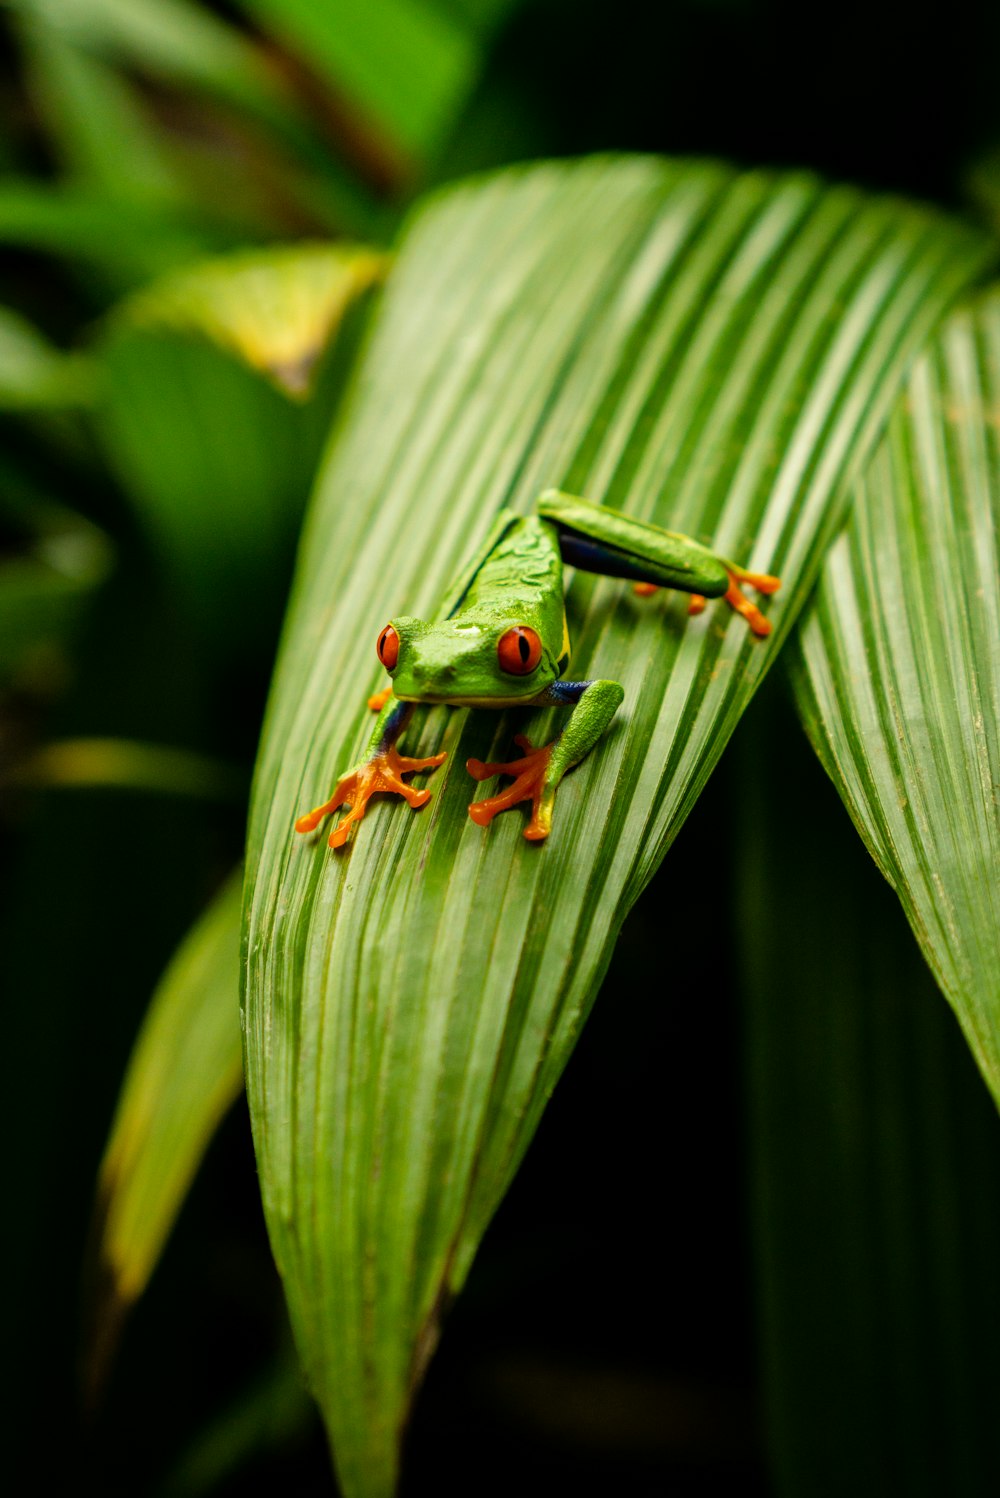 녹색 잎에 녹색 개구리